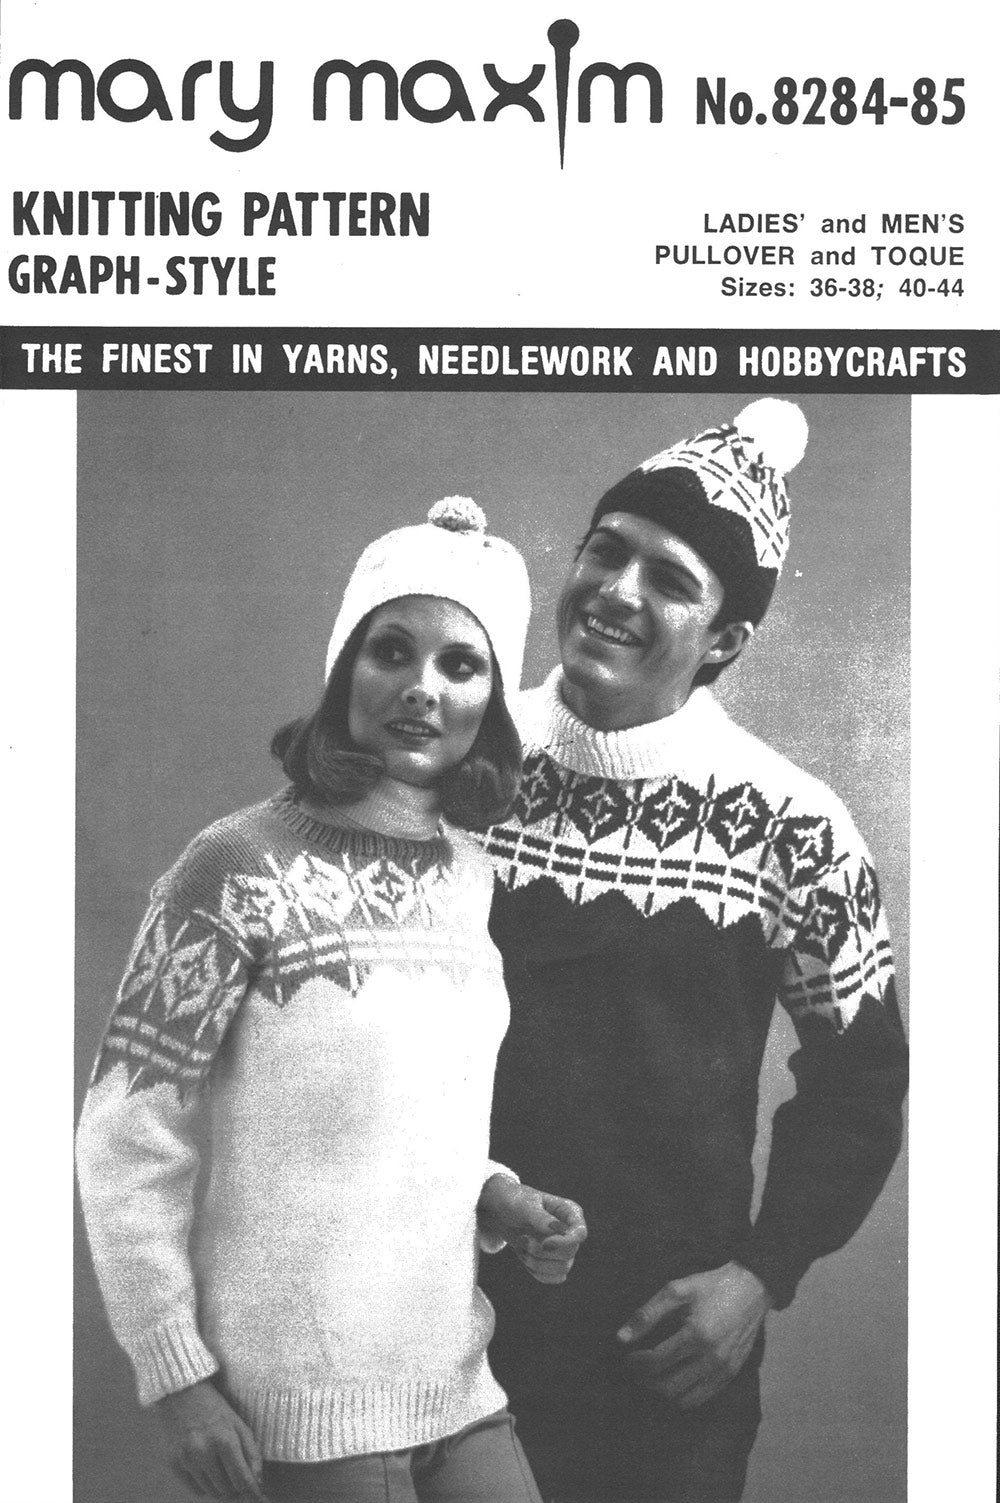 Ladies' & Men's Pullover & Toque Pattern